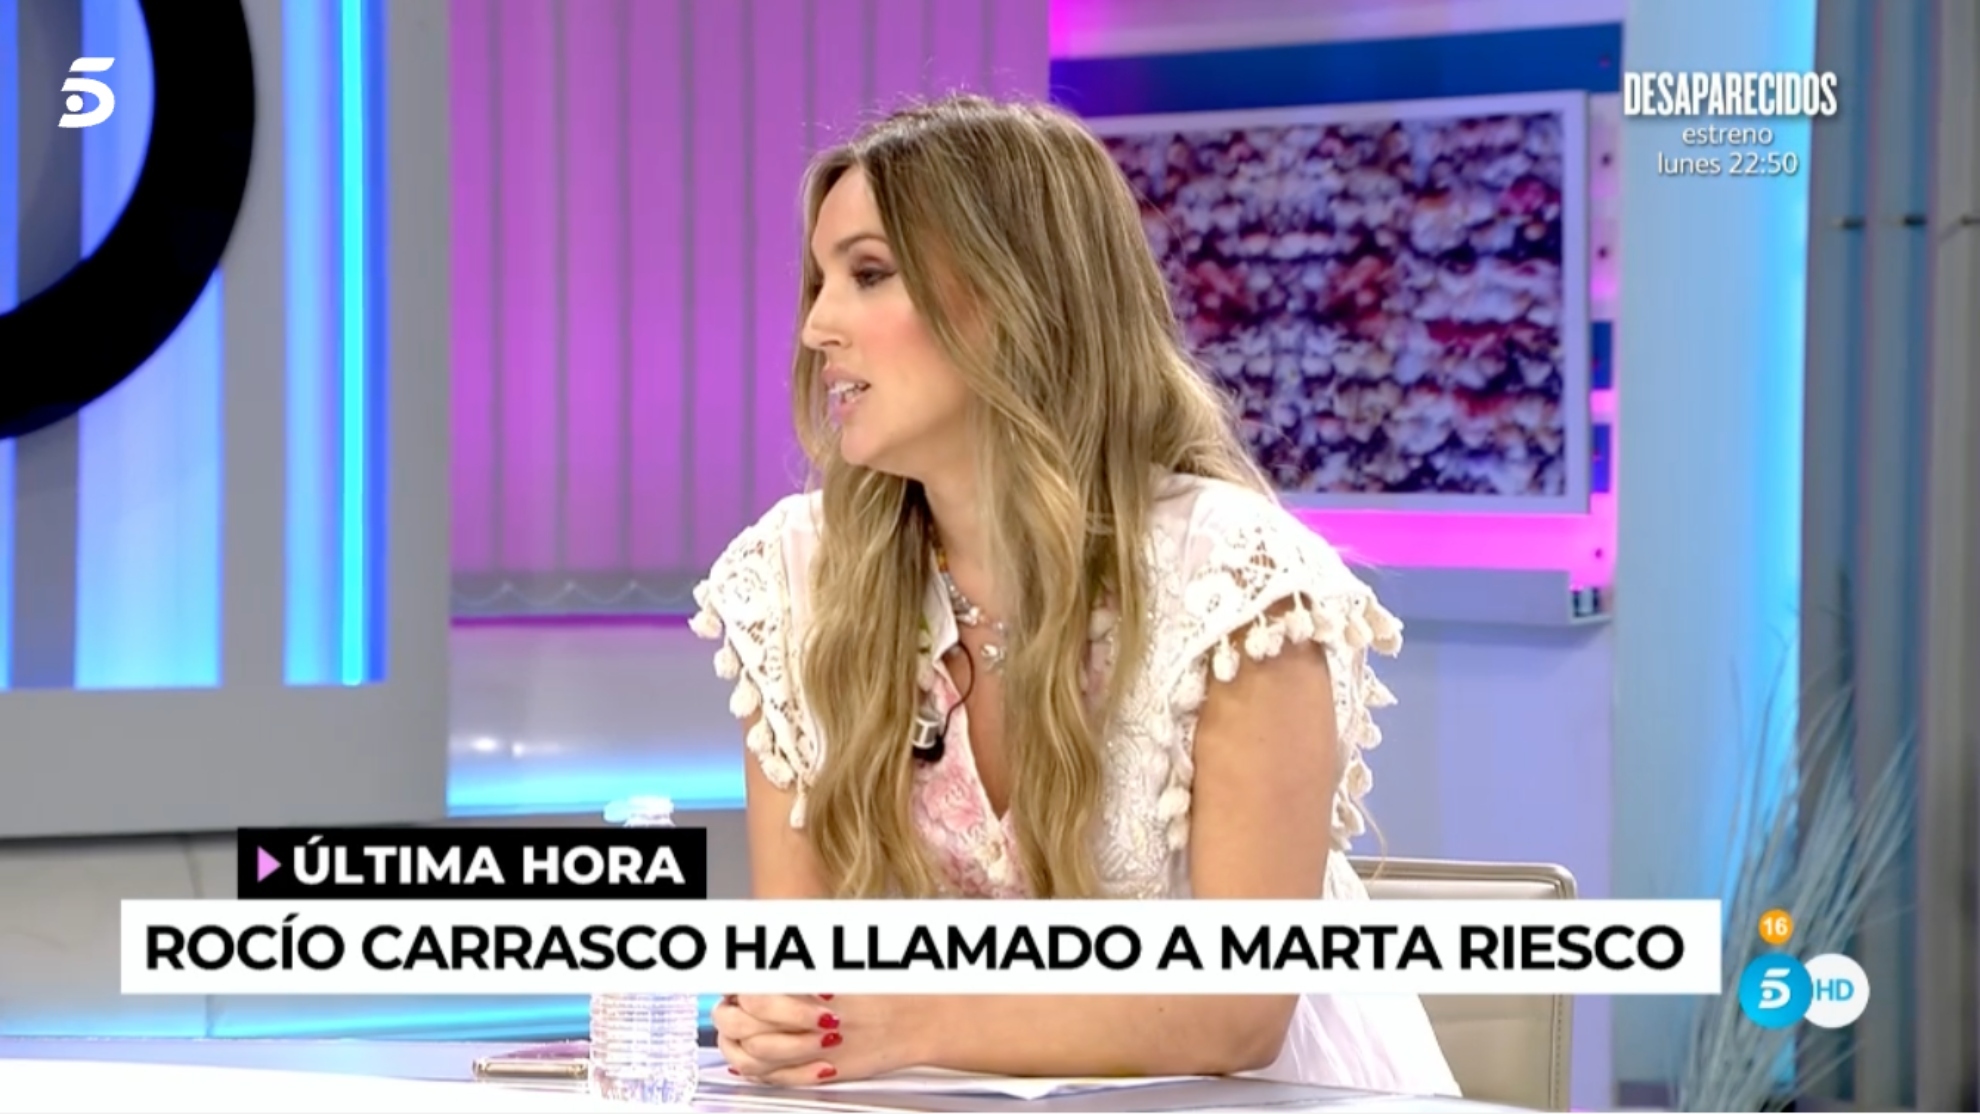 Marta Riesco confirma que ha recibido una llamada de Roco Carrasco